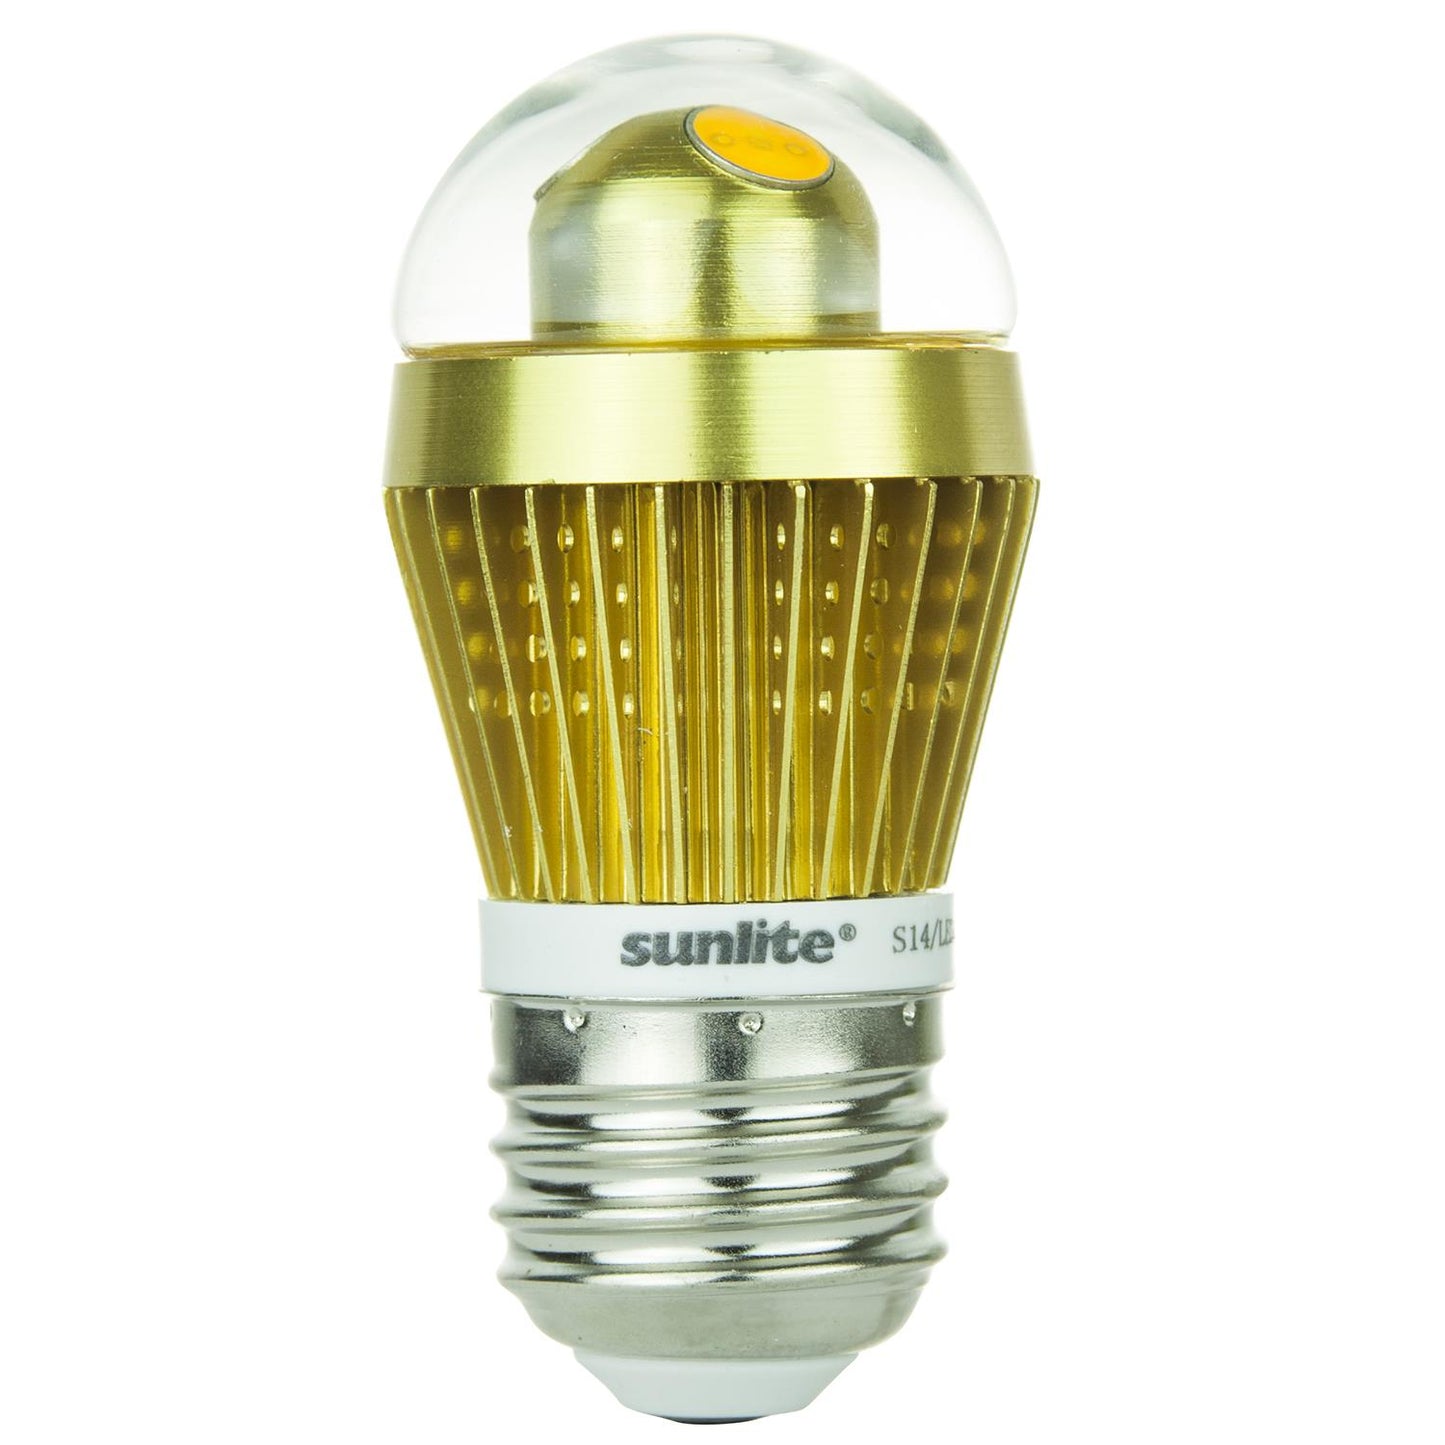 Sunlite S14/LED/3W/D/CL/W LED 3W Clear S14 Sign Light Bulbs, Medium (E26) Base, 6000K White